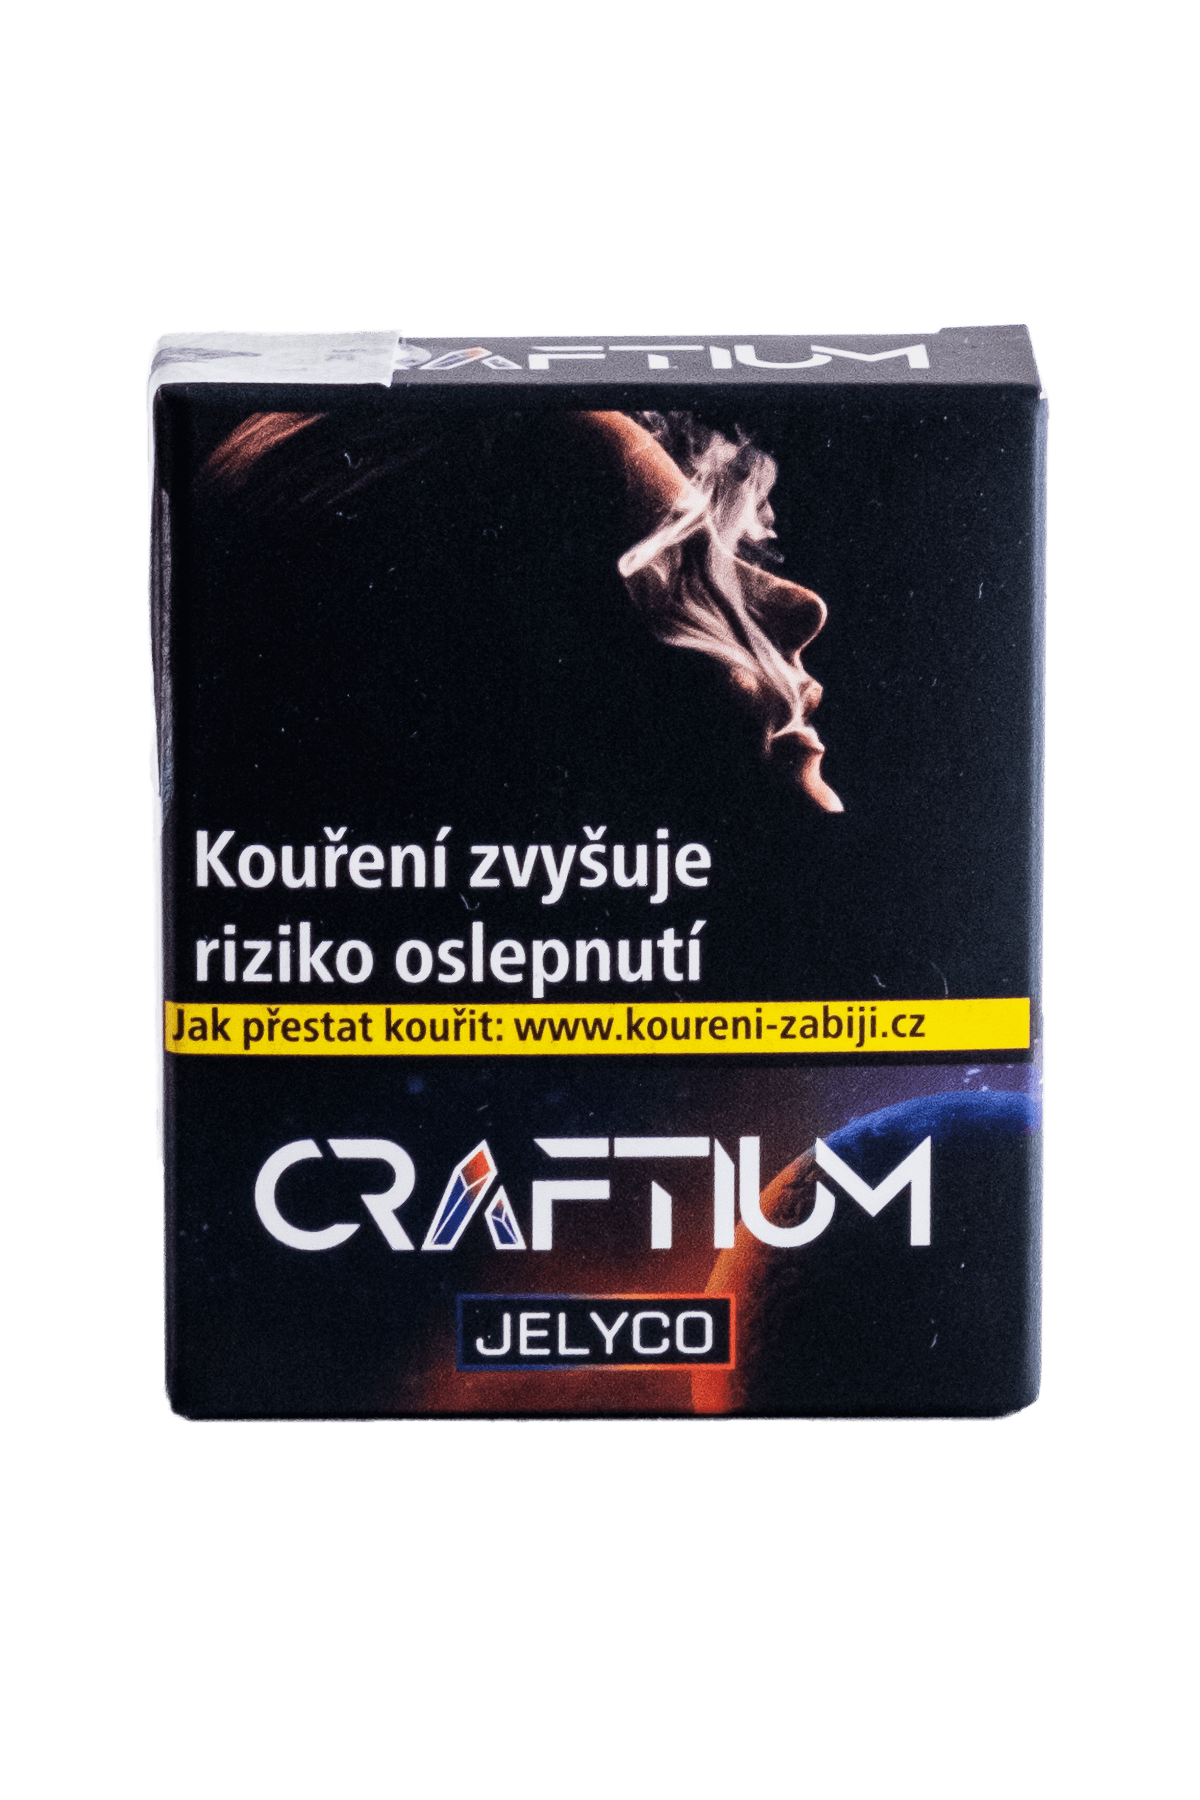 Tabák - Craftium 20g - Jelyco